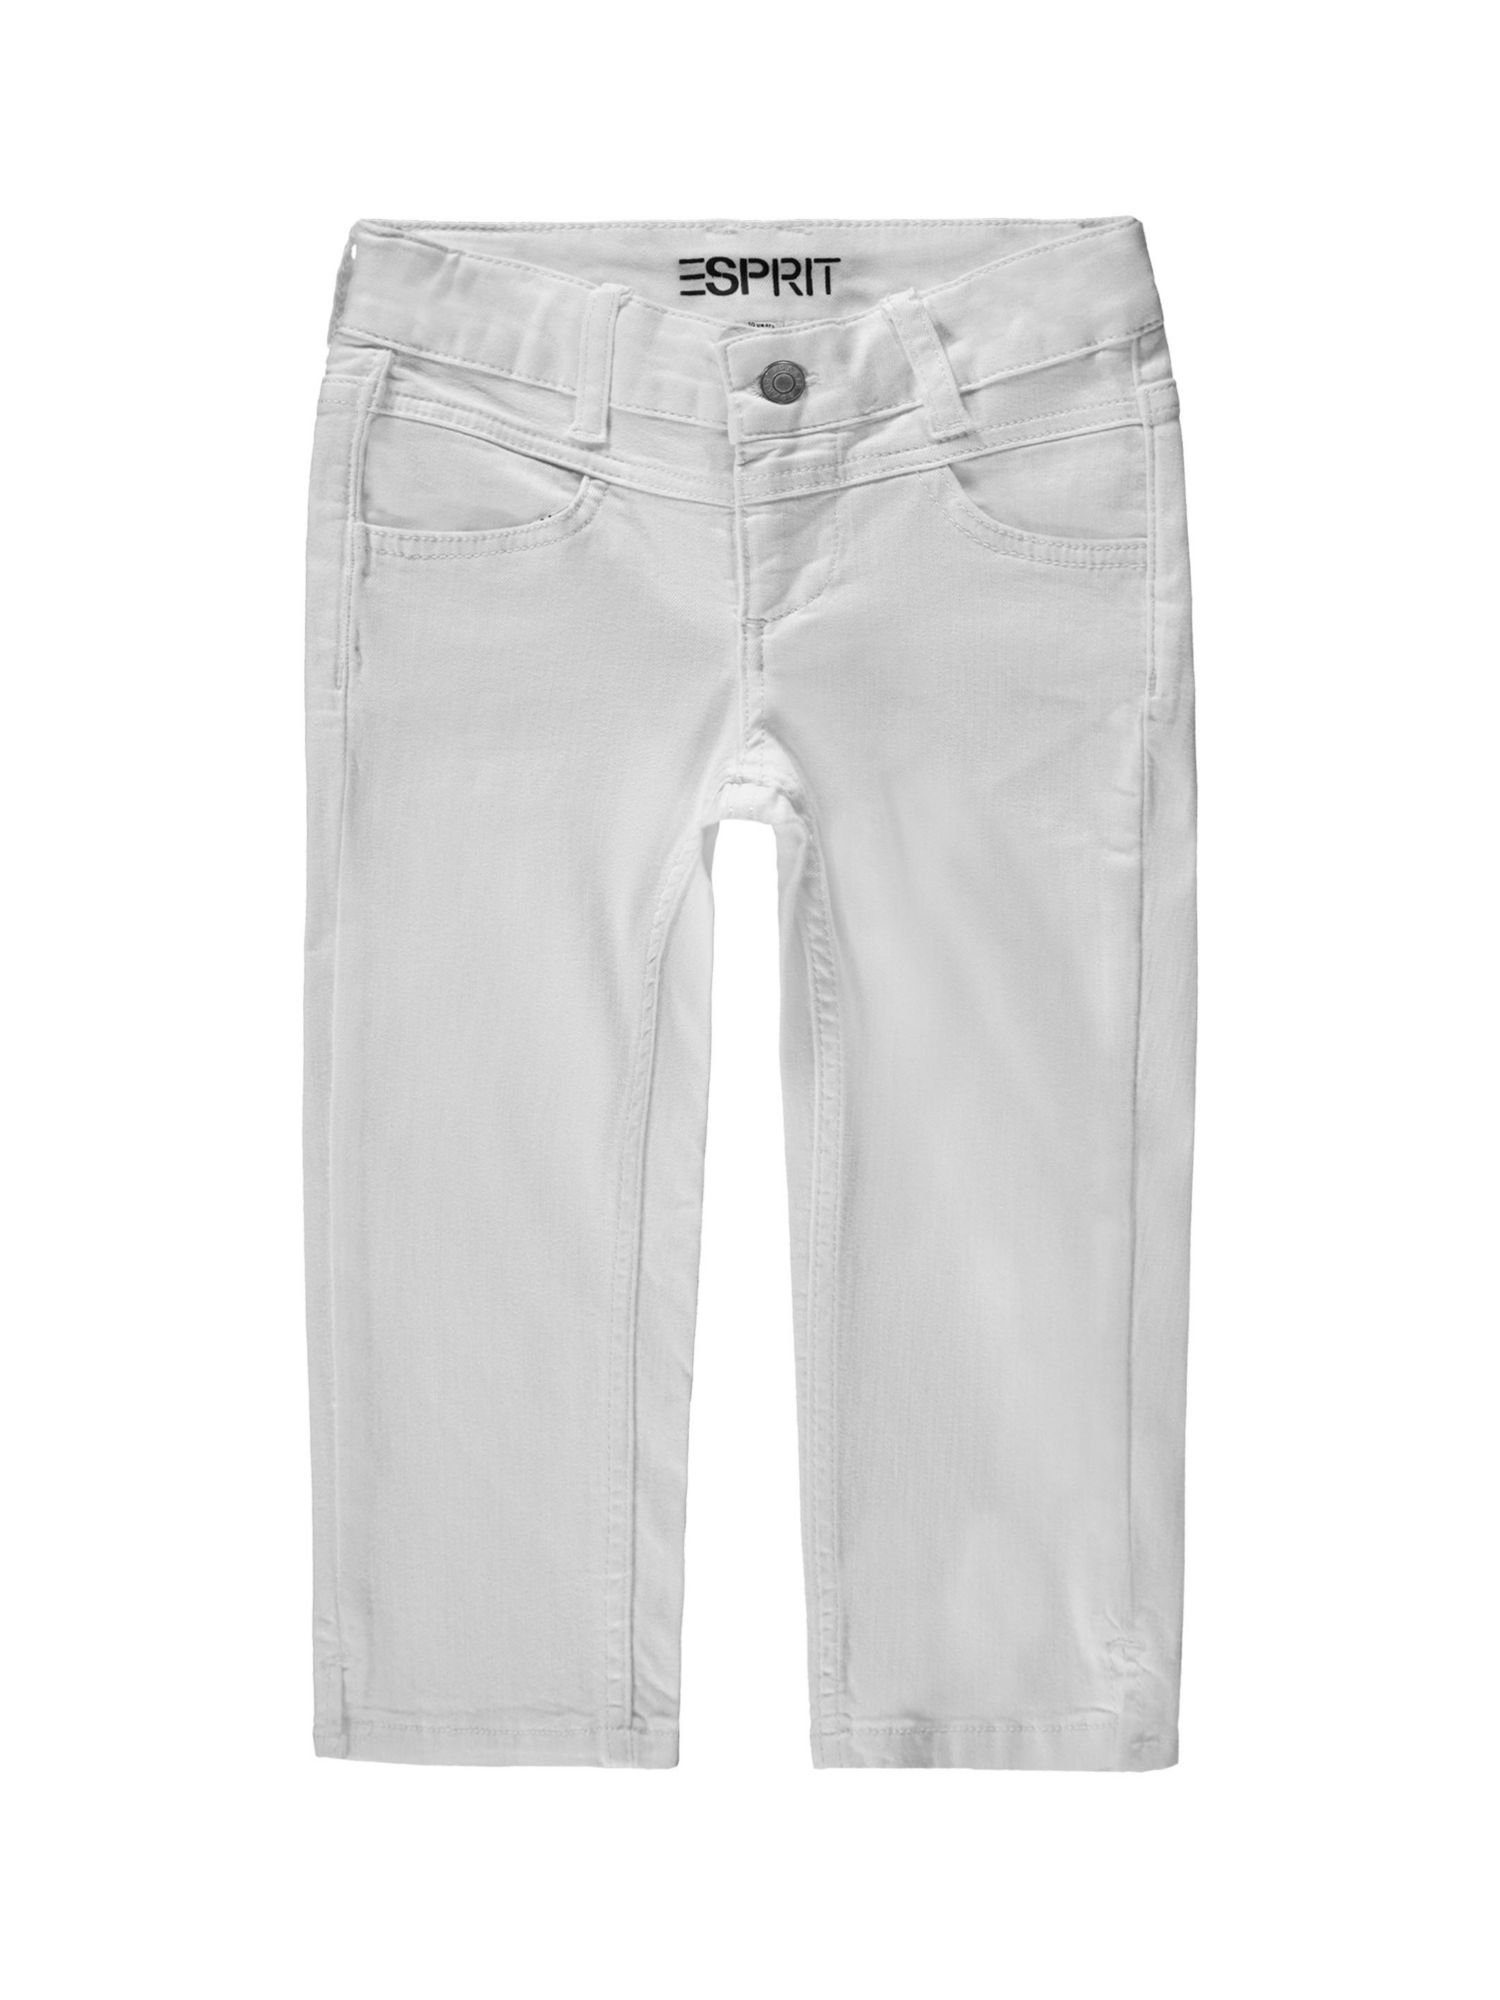 Verstellbund Jeansshorts Recycelt: Esprit WHITE mit Capri-Jeans